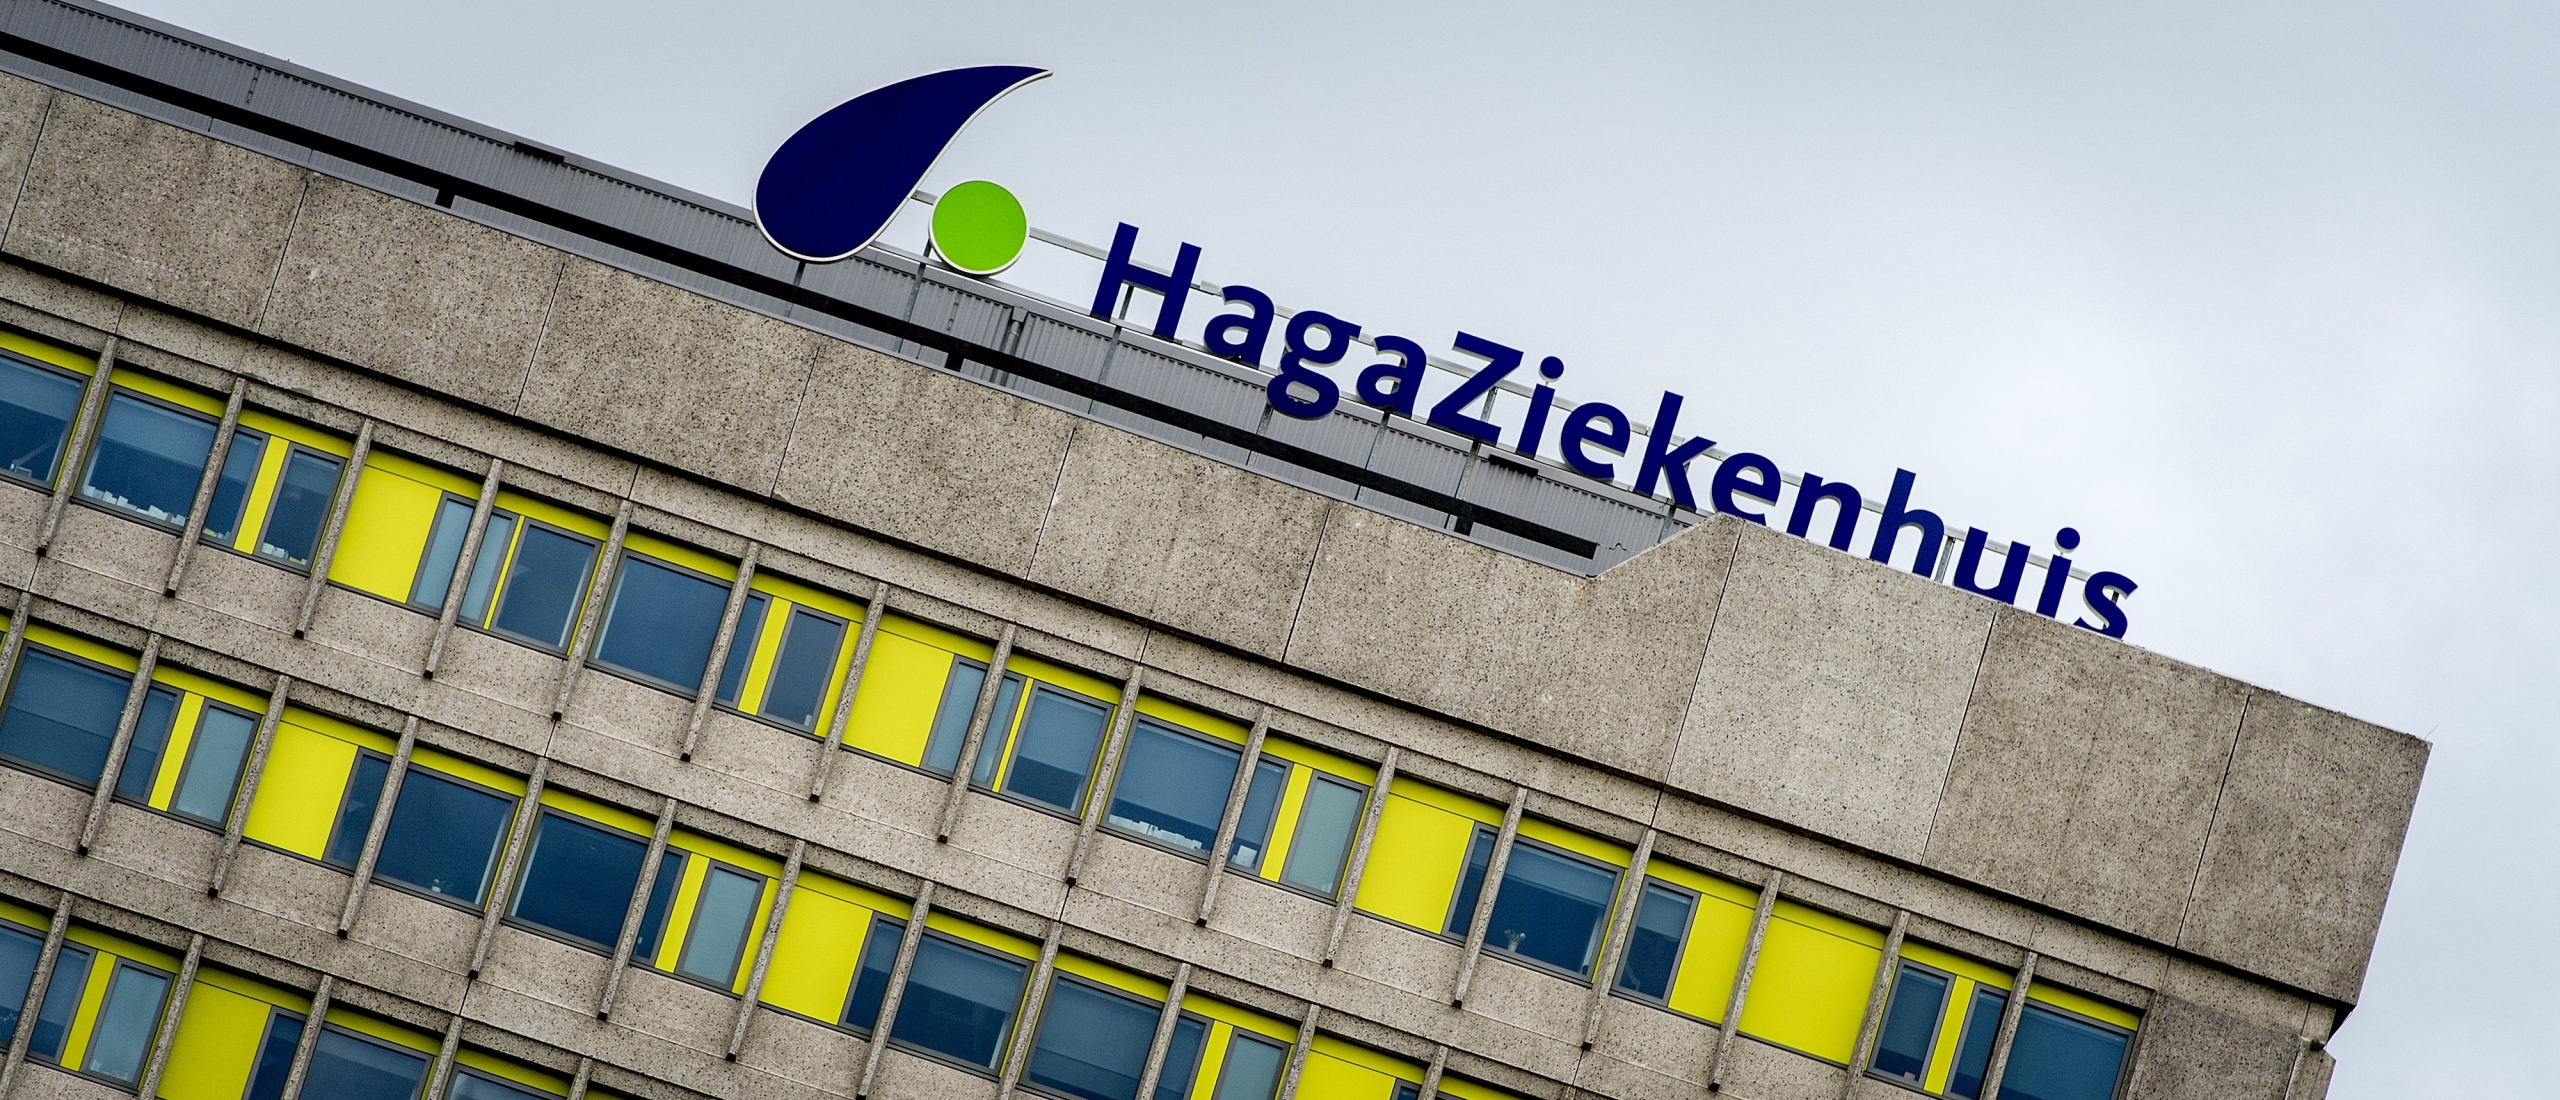 Zoetermeer bezorgd over toekomstig zorgaanbod in HagaZiekenhuis